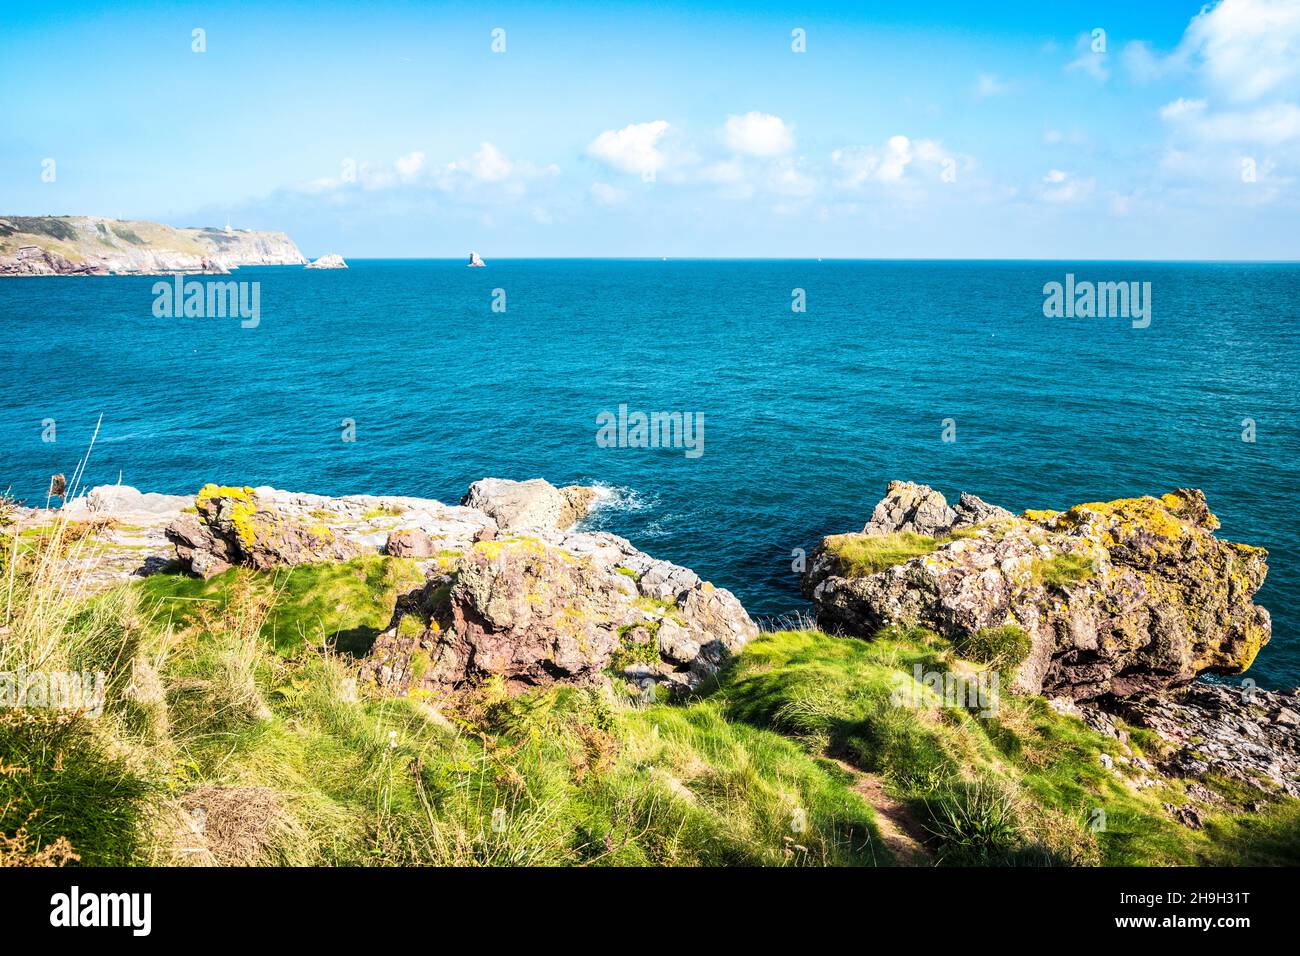 Blick auf St. Mary's Bay, Darl Head und Berry Head bei Brixham in Devon vom South West Coast Path mit Darl Rock, Mew Stone und Cod Rock Stockfoto